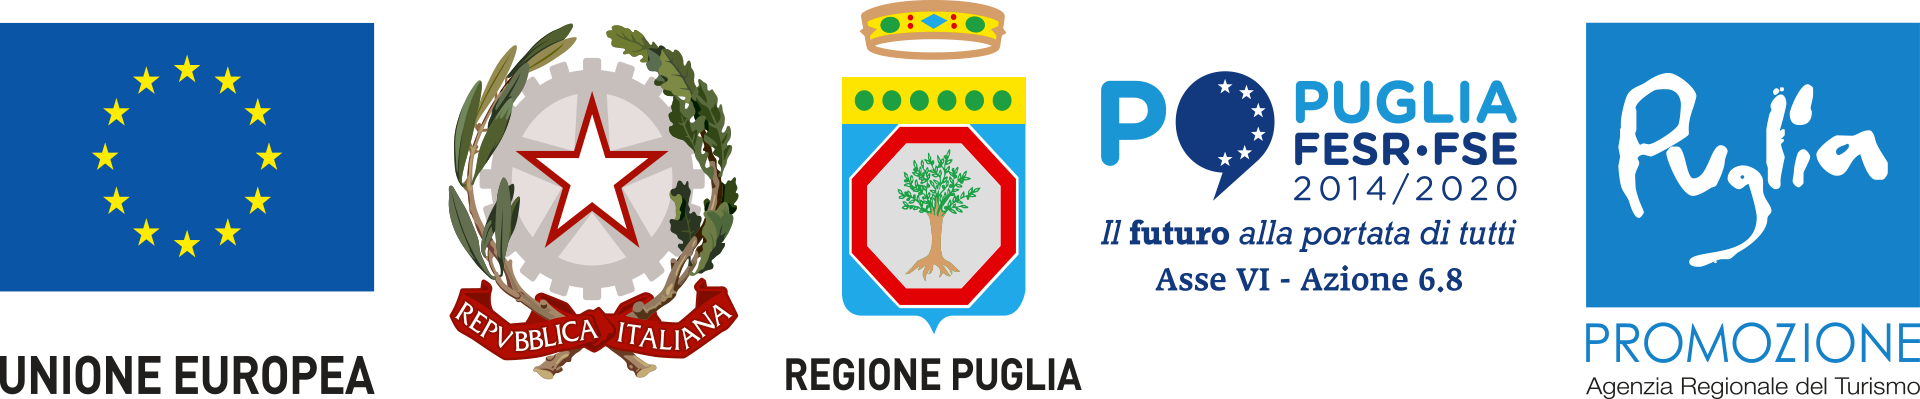 Loghi Istituzionali - Unione Europea | Repubblica italiana | Regione Puglia | Puglia FESR-FSE | Puglia Promozione